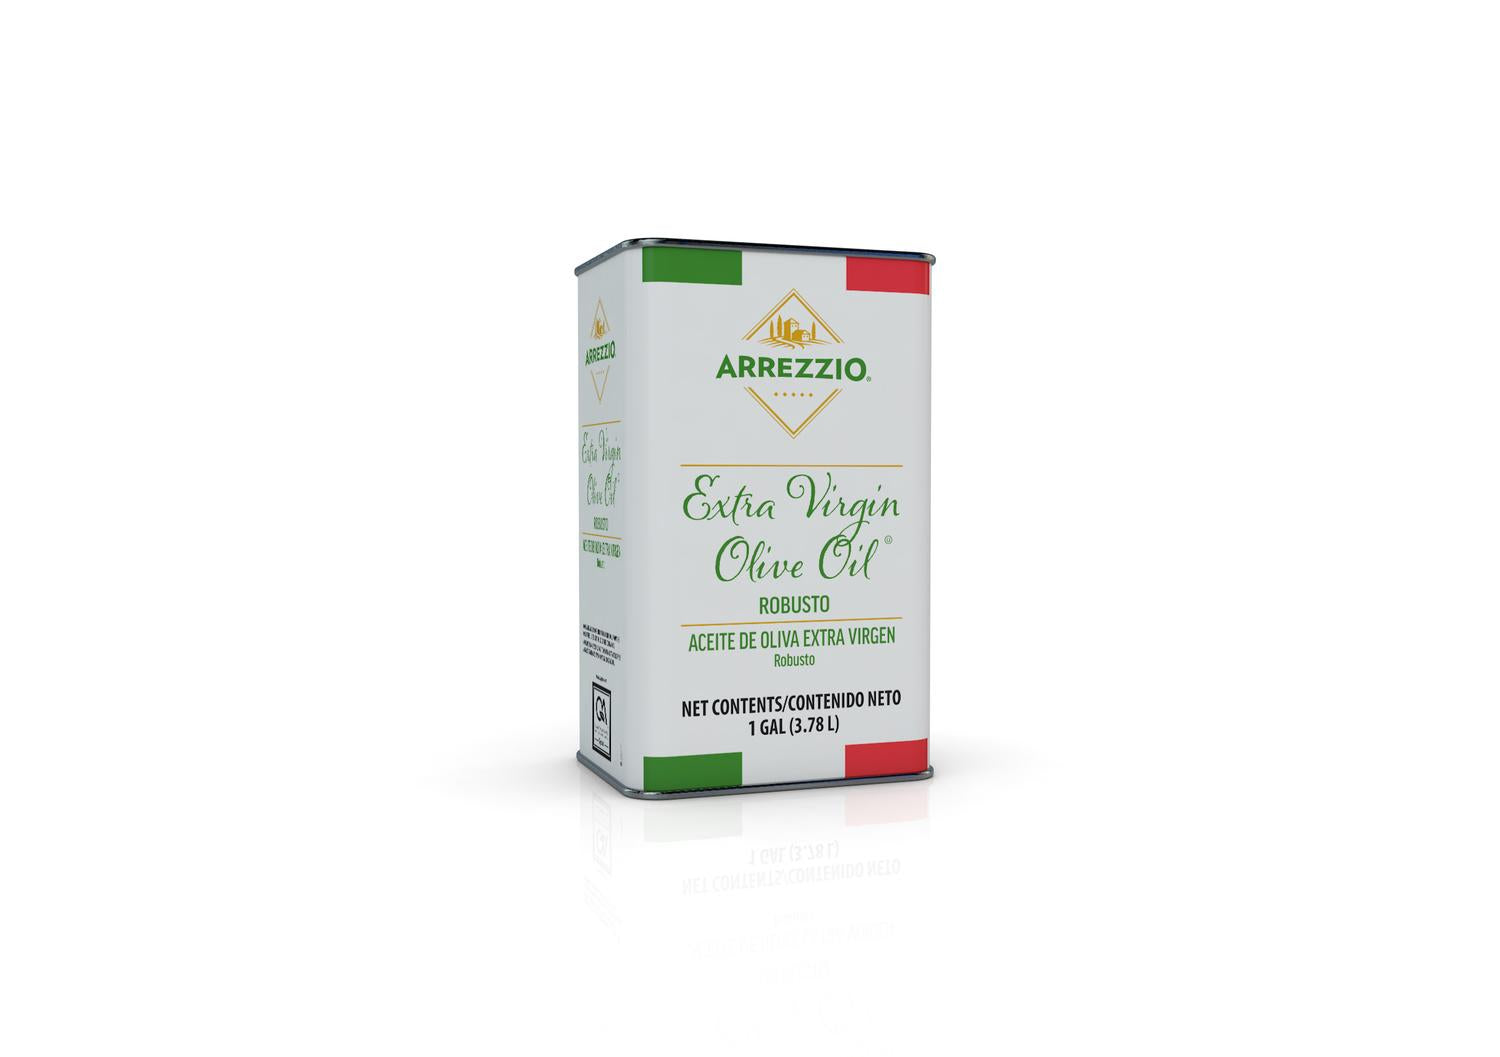 Arrezzio Extra Virgin Olive Oil Robusto, 1 Gallon (3.78L)